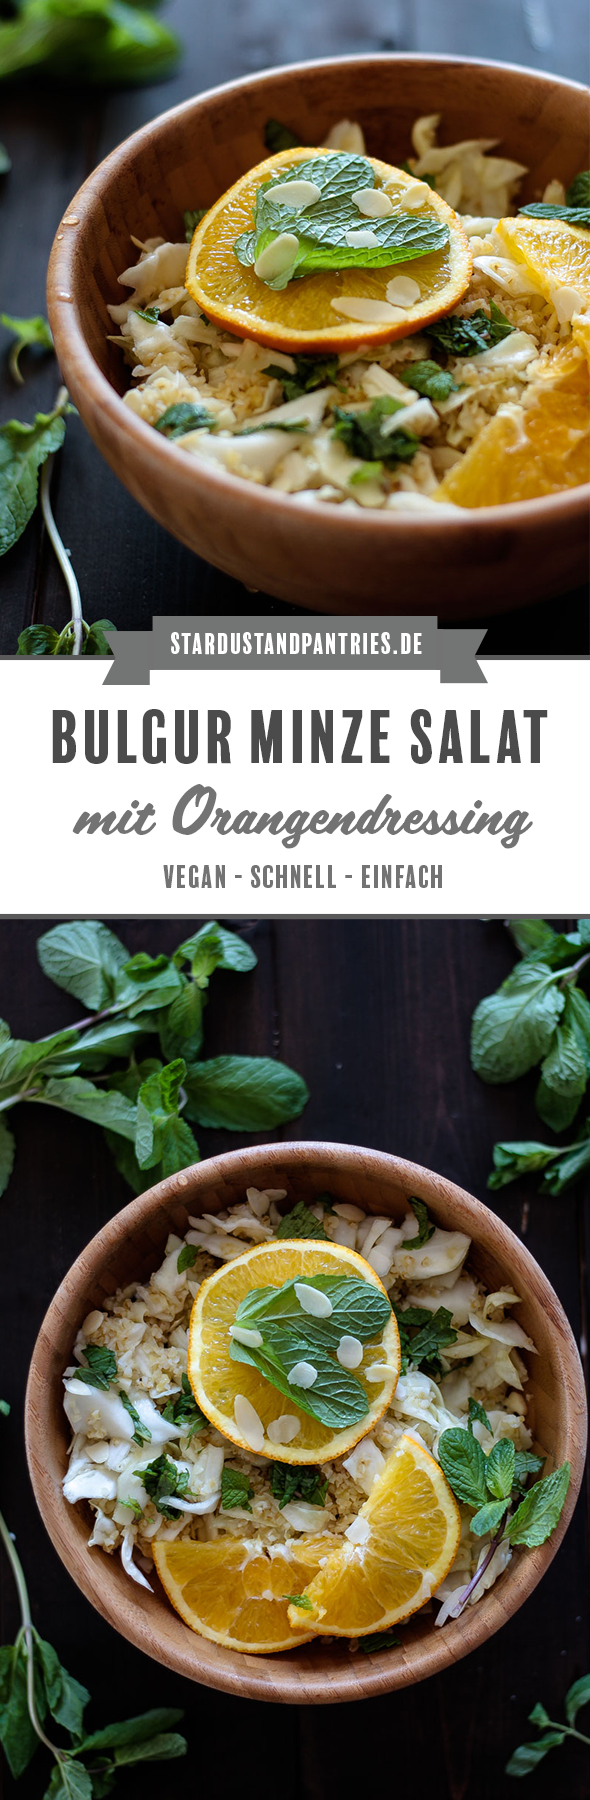 Ein schneller veganer Bulgur Minze Salat mit fruchtigem Orangendressing ist perfekt für stressige Tage! Einfach, wenige Zutaten und gesund! #Salat #vegan #Bulgur #Bulgurminze #schnelleküche